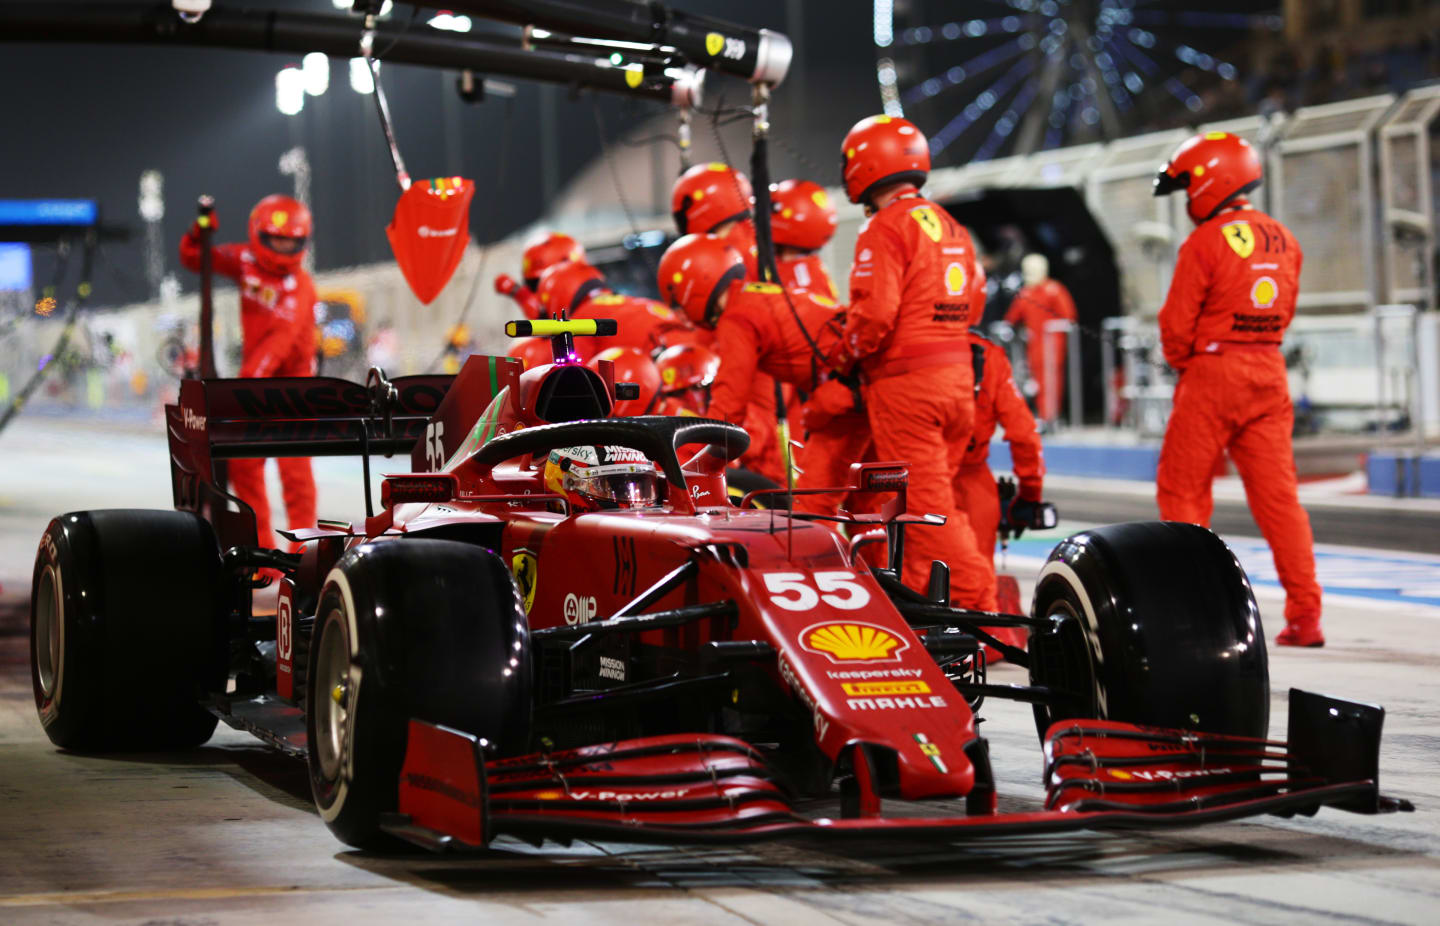 BAHRAIN, BAHRAIN - MARCH 28: Carlos Sainz of Spain driving the (55) Scuderia Ferrari SF21 in the